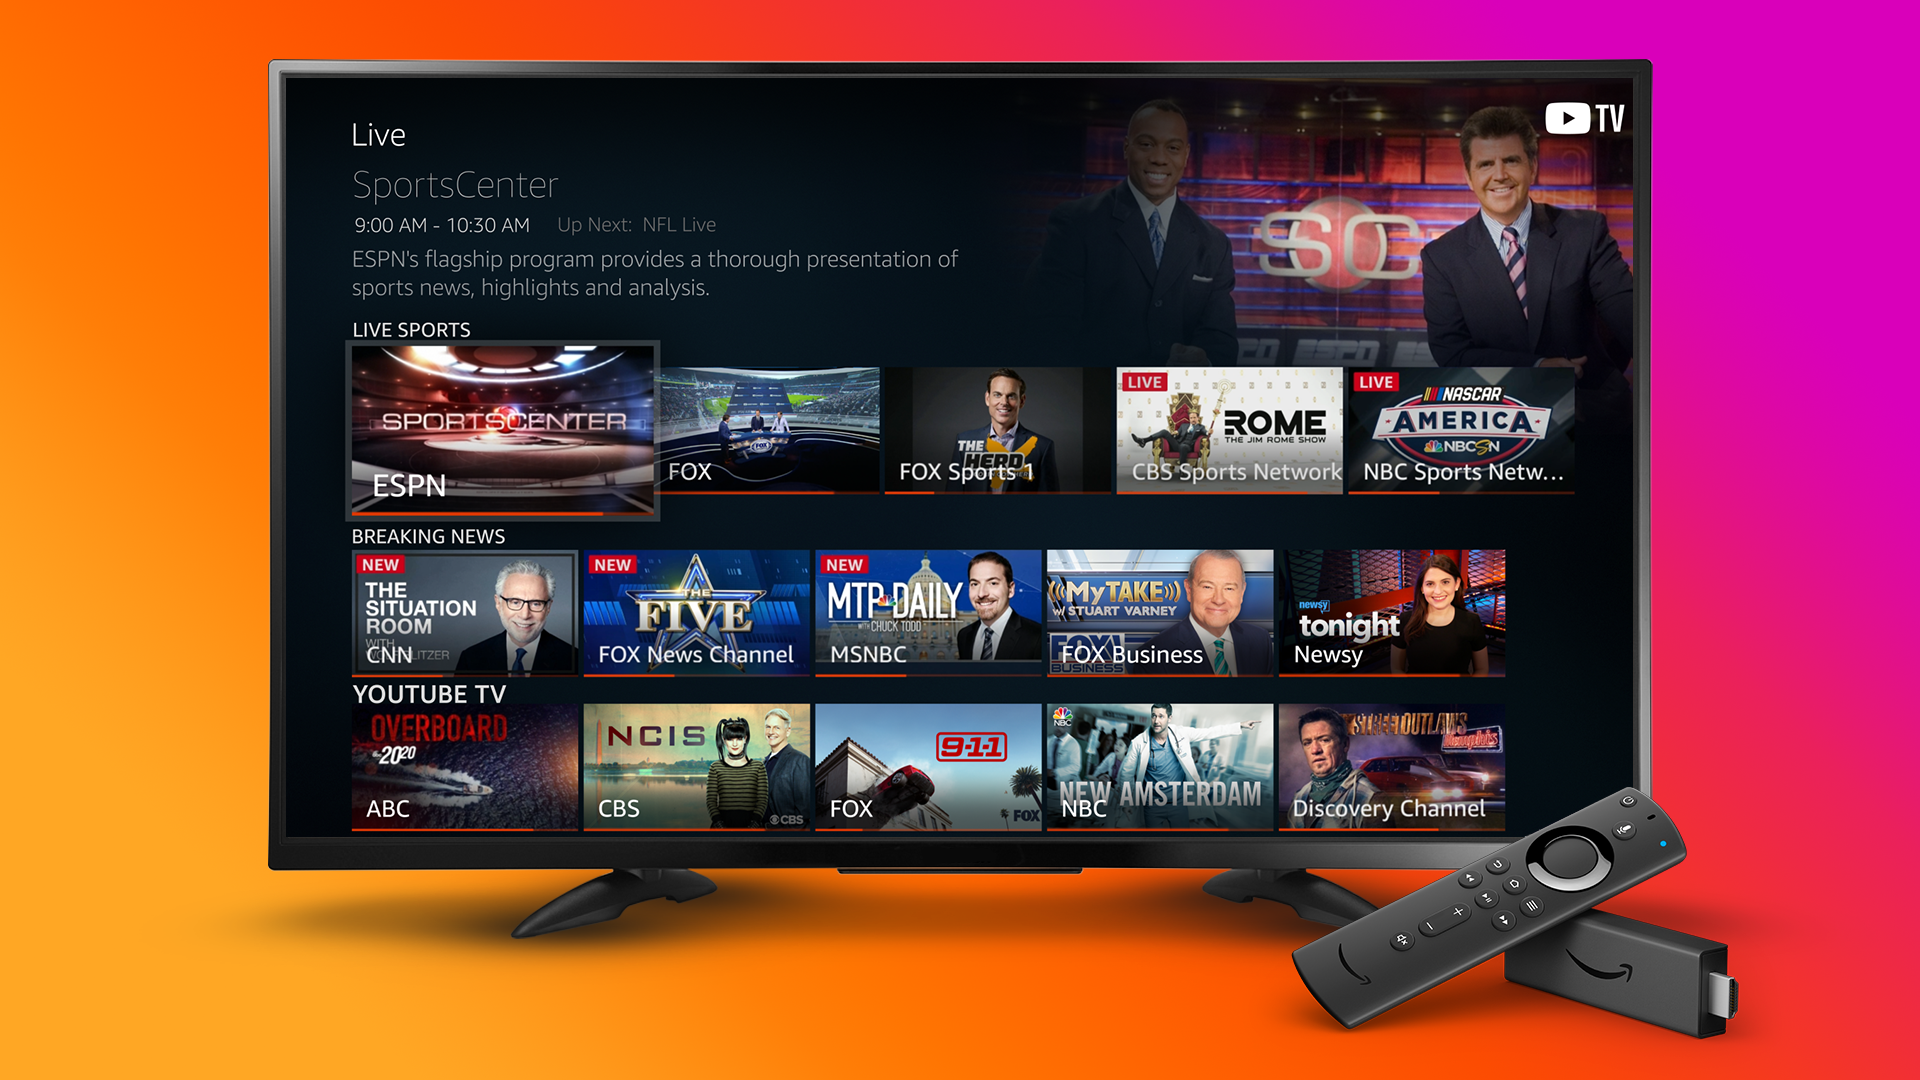 亚马逊 Fire TV 平台扩展直播电视功能，并支持 Alexa 语音助手